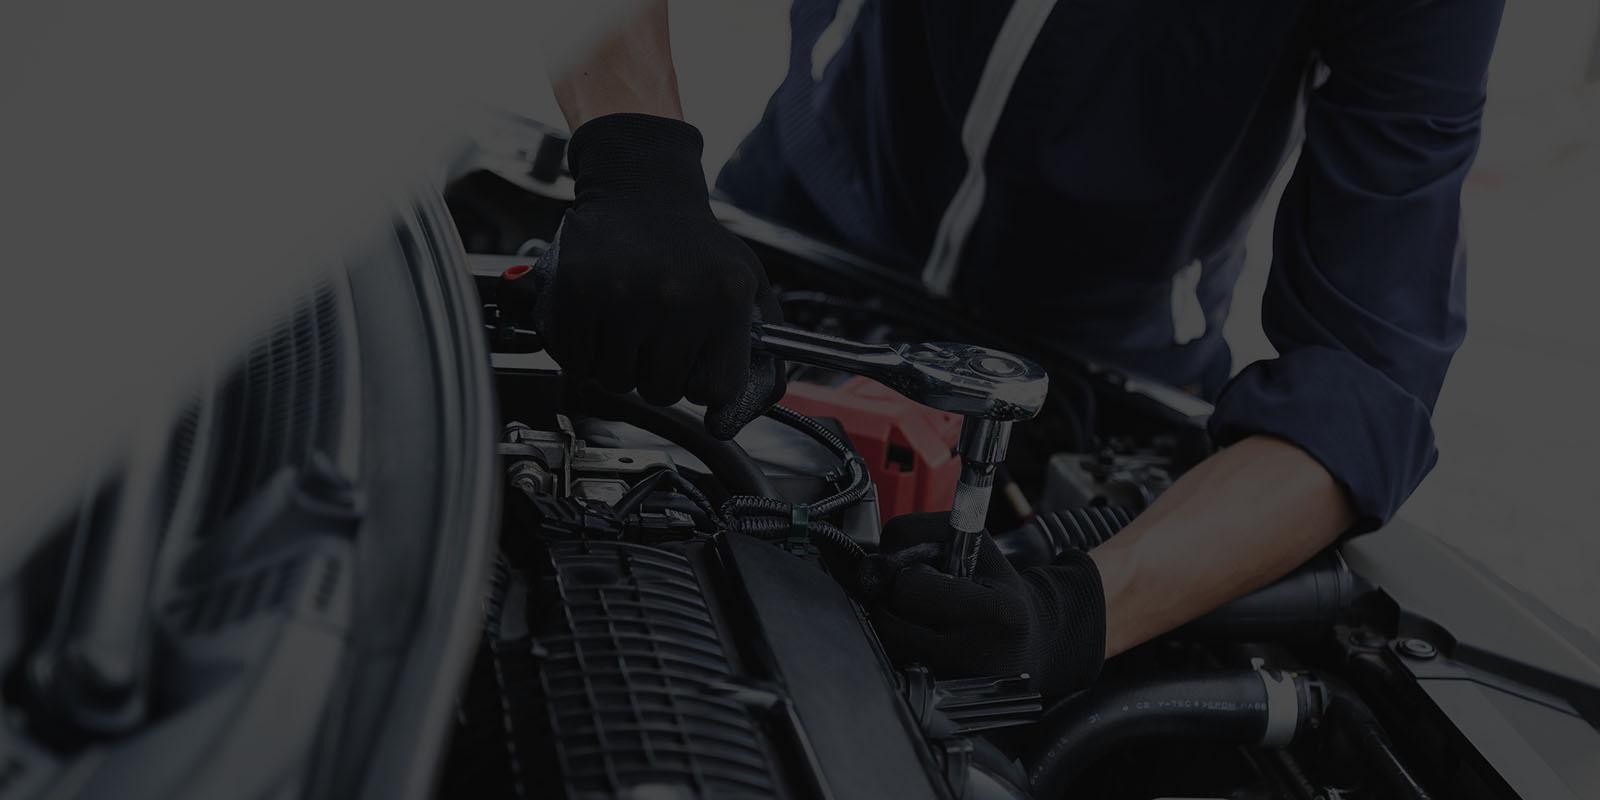 Automobile mechanic repairman hands repairing a car engine